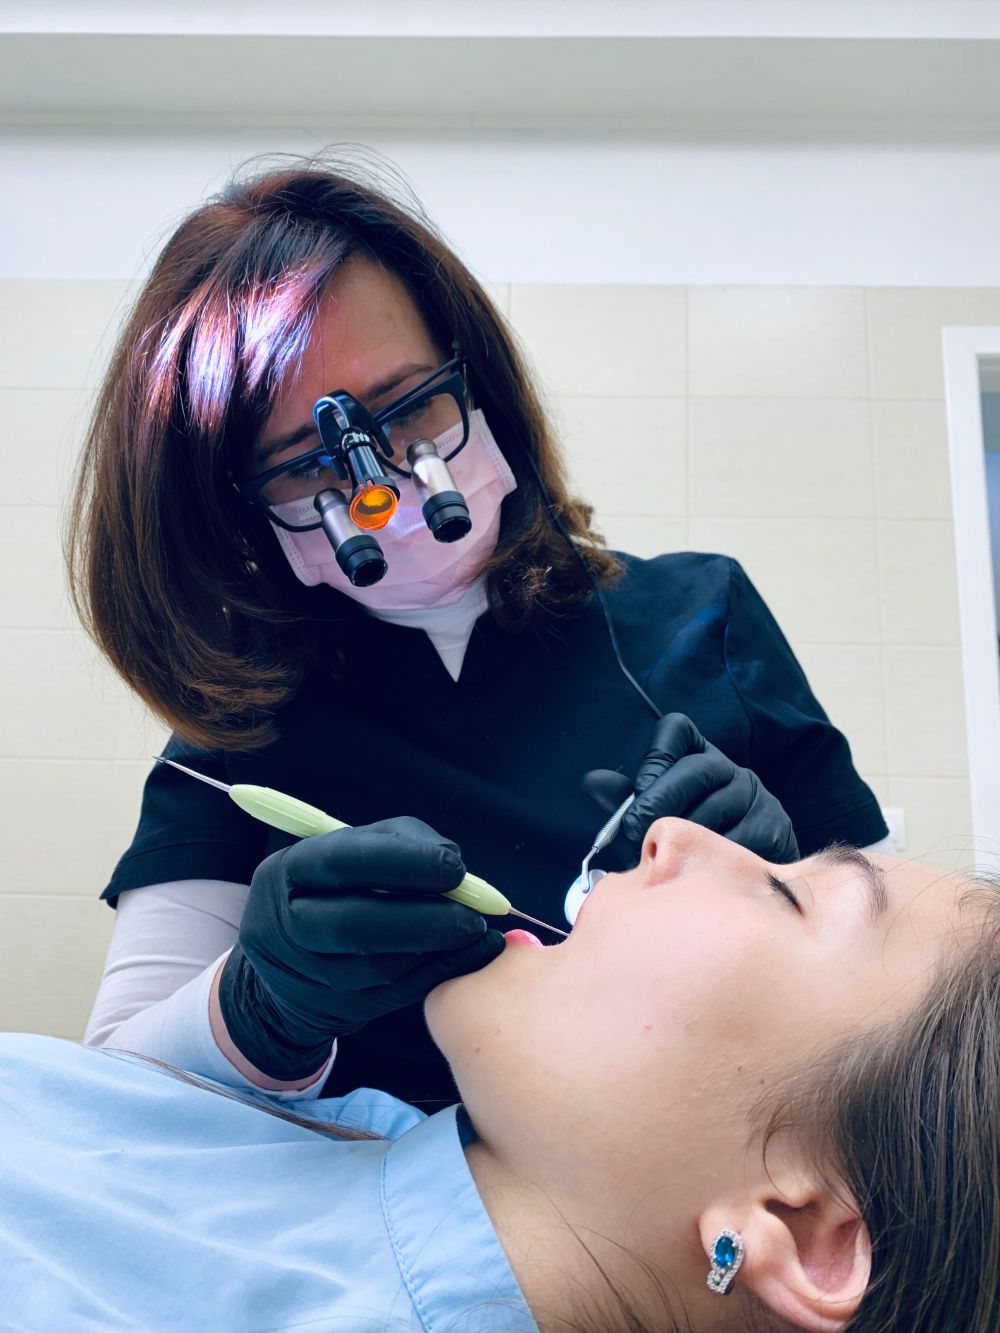 Så du vill bli tandhygienist? Här är vad du behöver veta